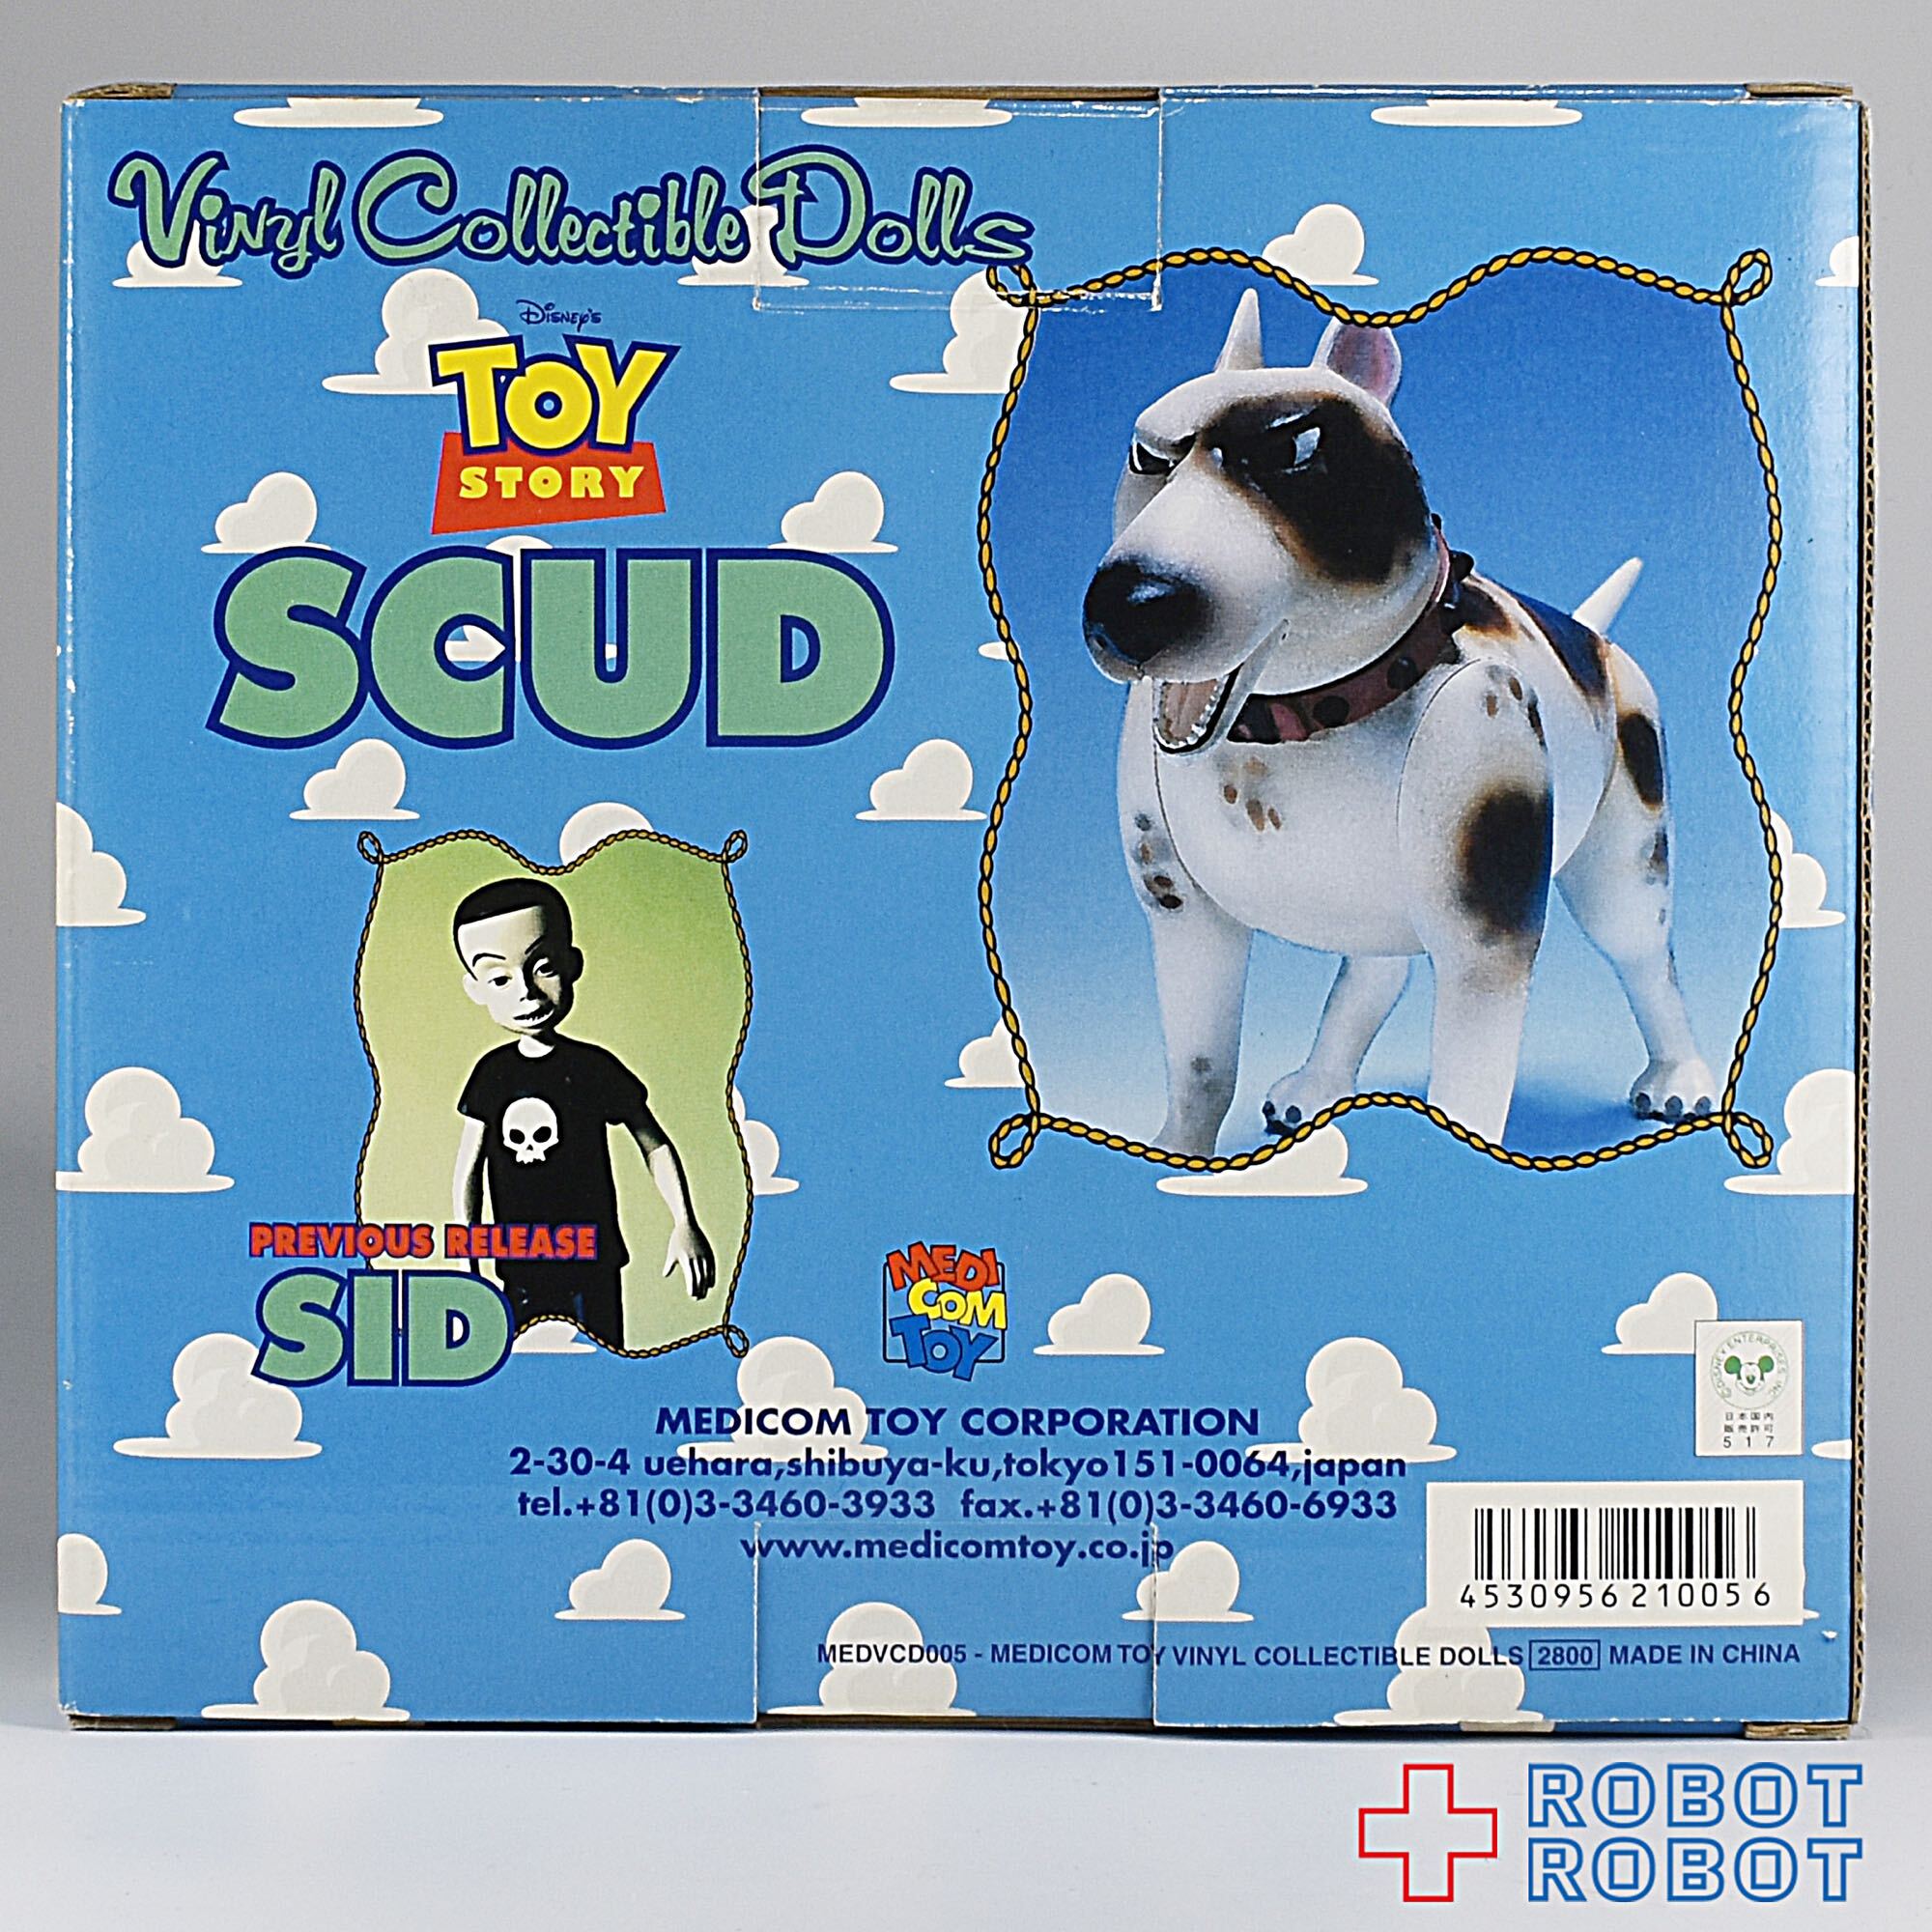 当季大流行 トイストーリー メディコムトイ スカッド シドの犬 Toy